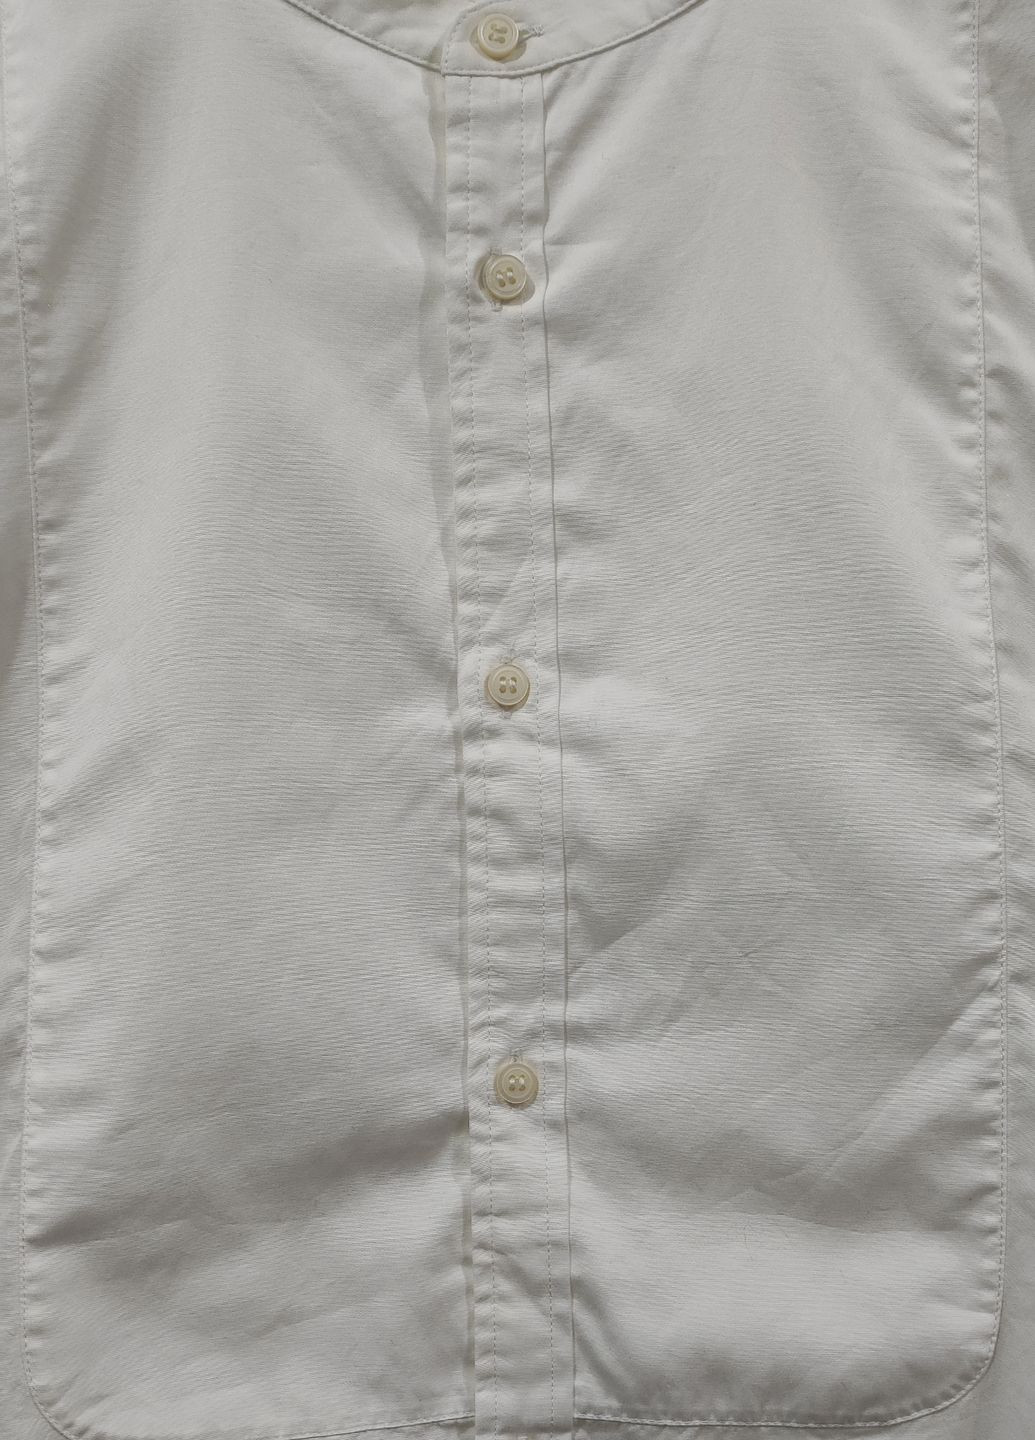 Белая рубашка Cos